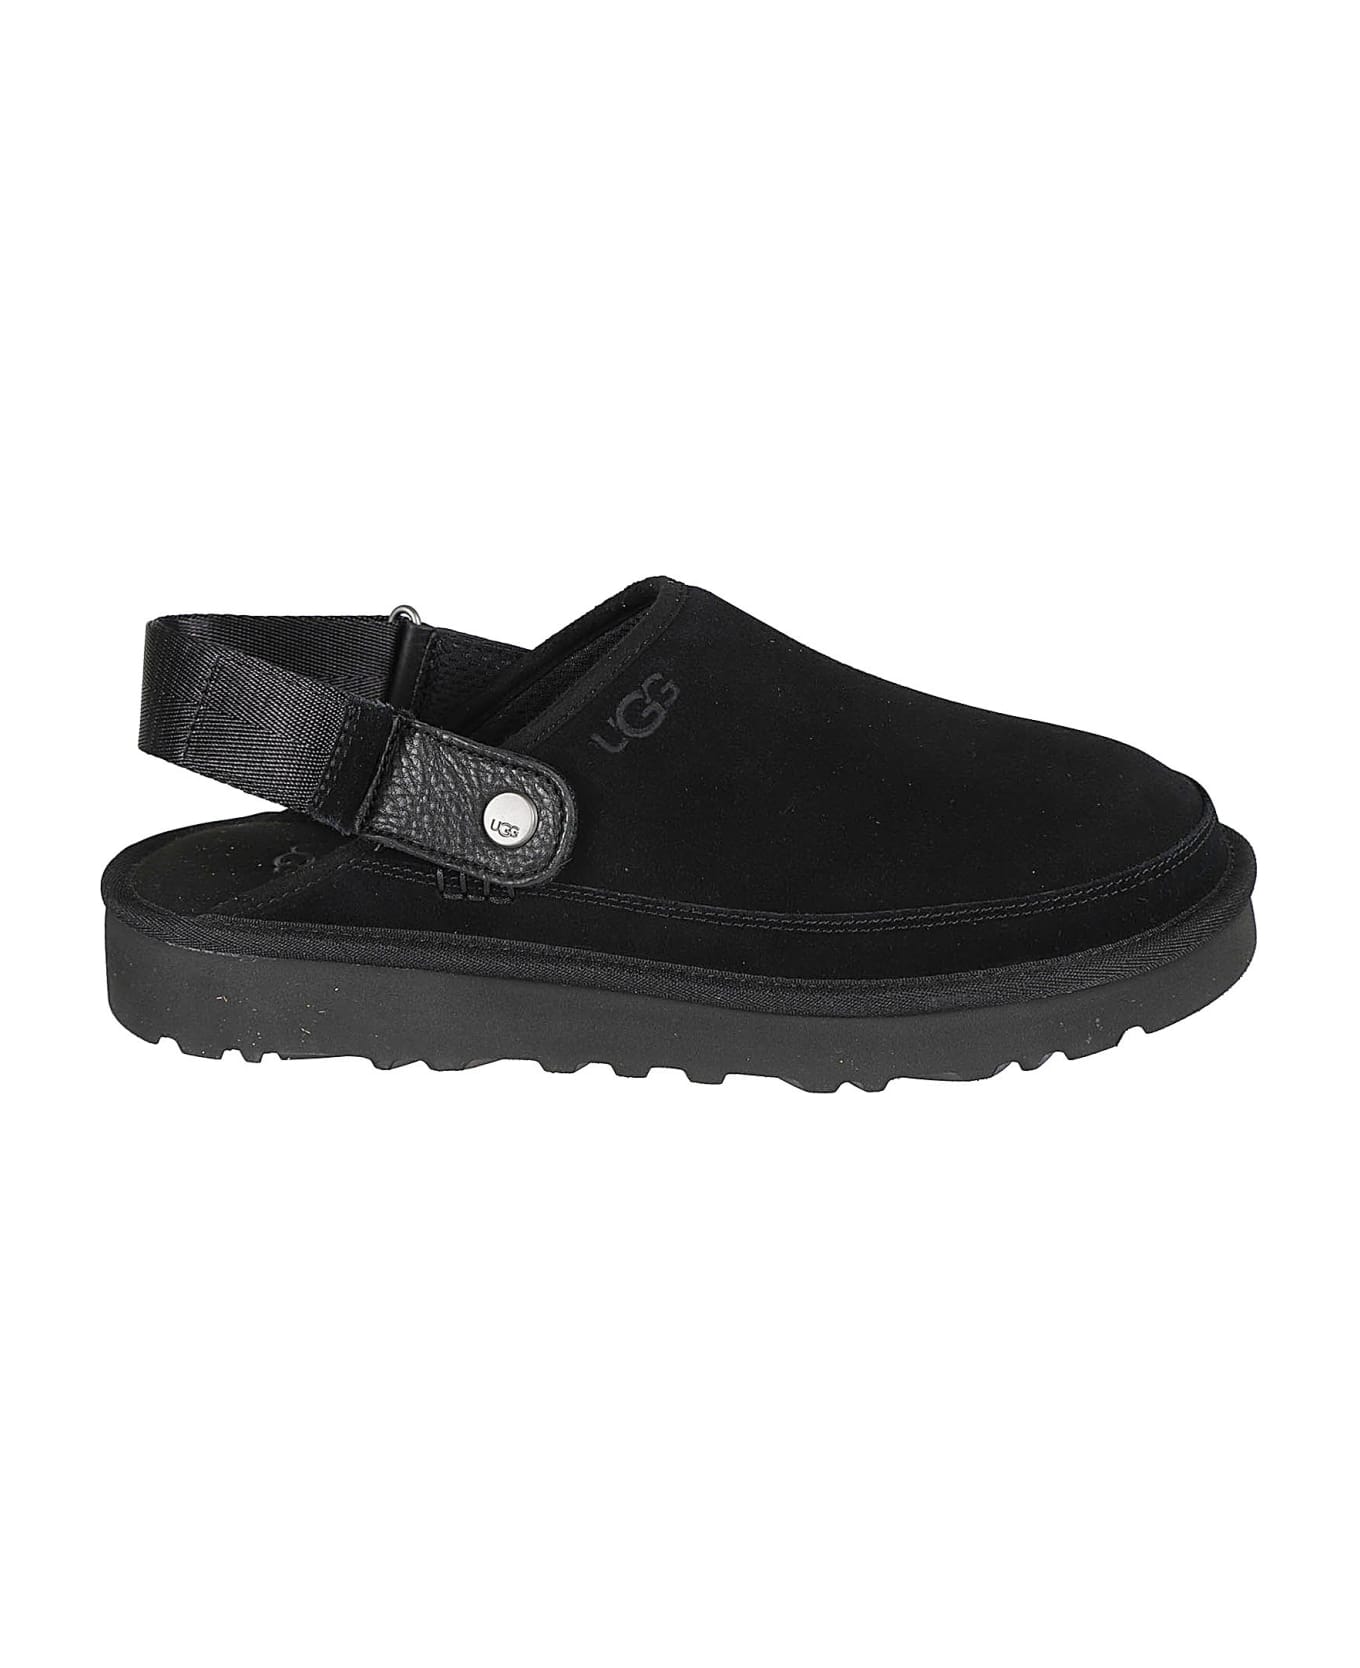 UGG Golden Coast Clog Sandals - Black